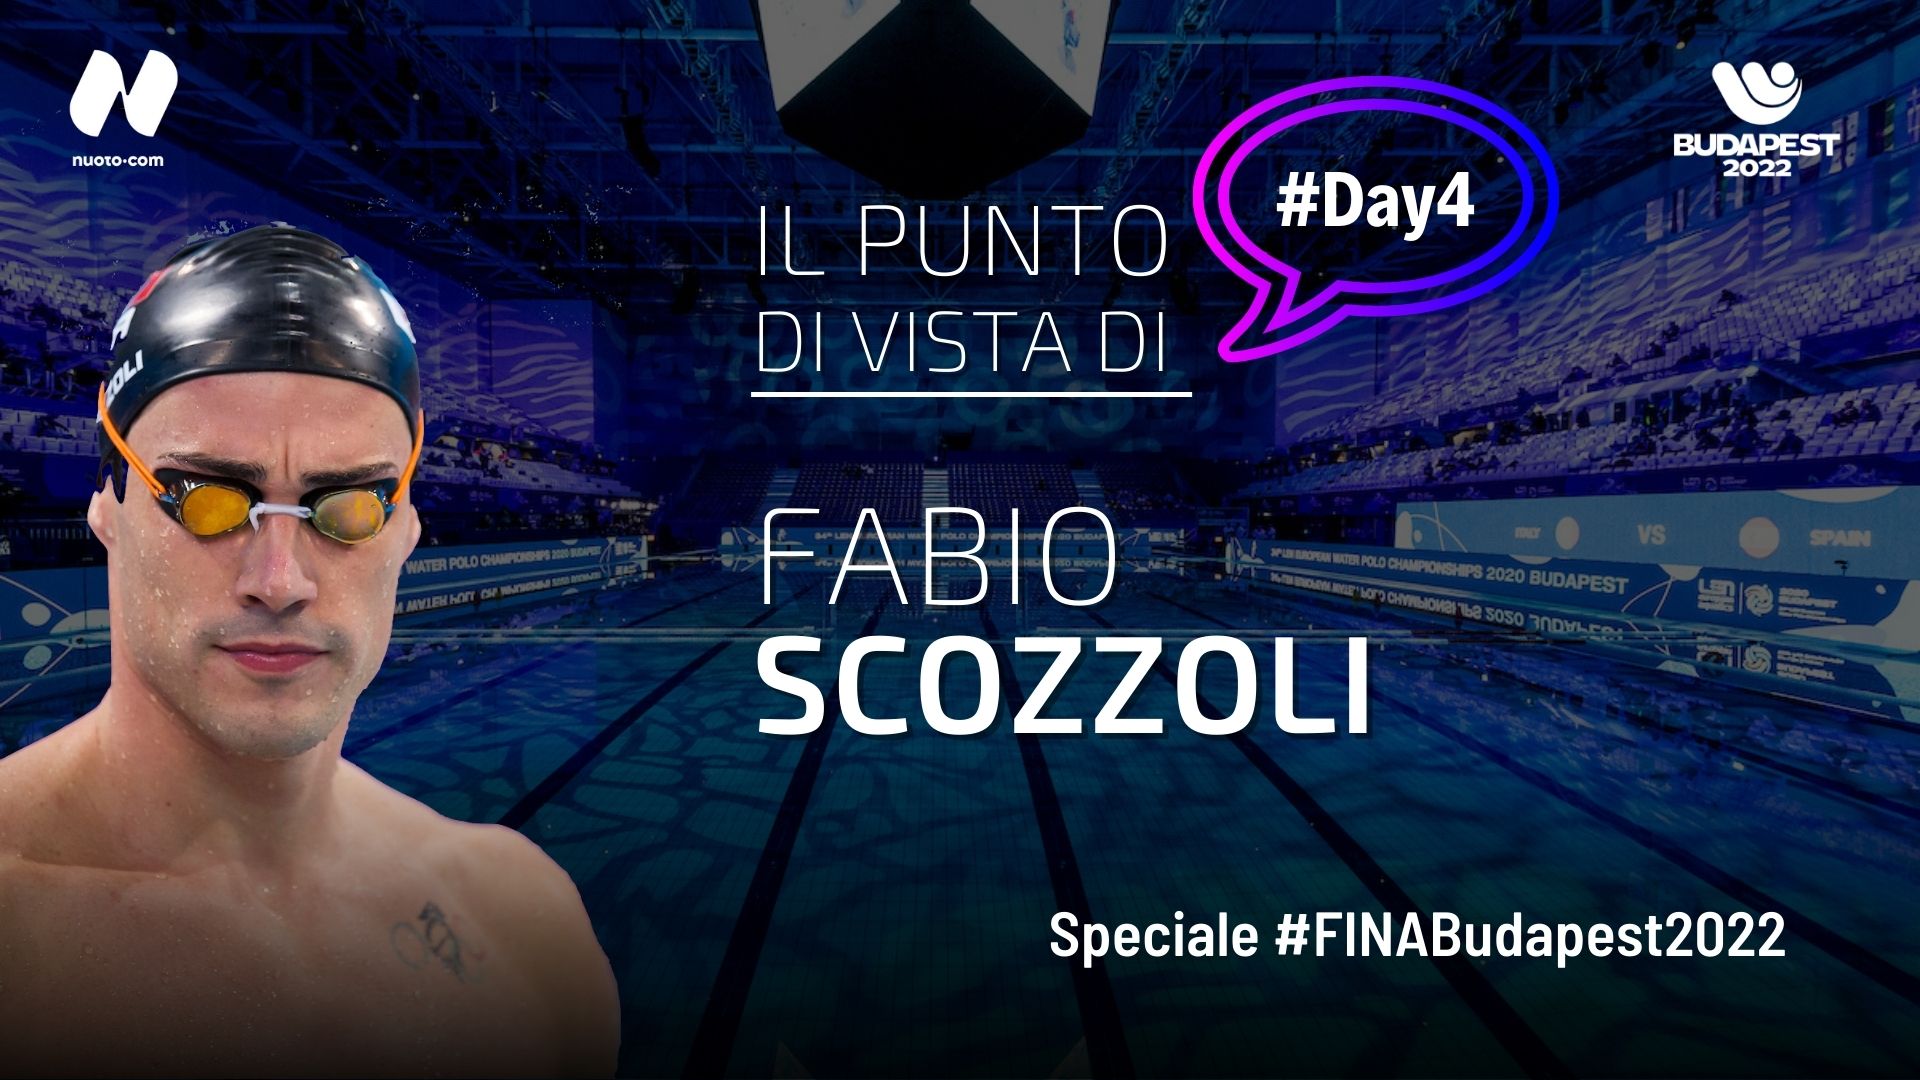 Day 4, Fabio Scozzoli: “Tete bravissimo. Oro e argento è davvero un gran bel bottino!”